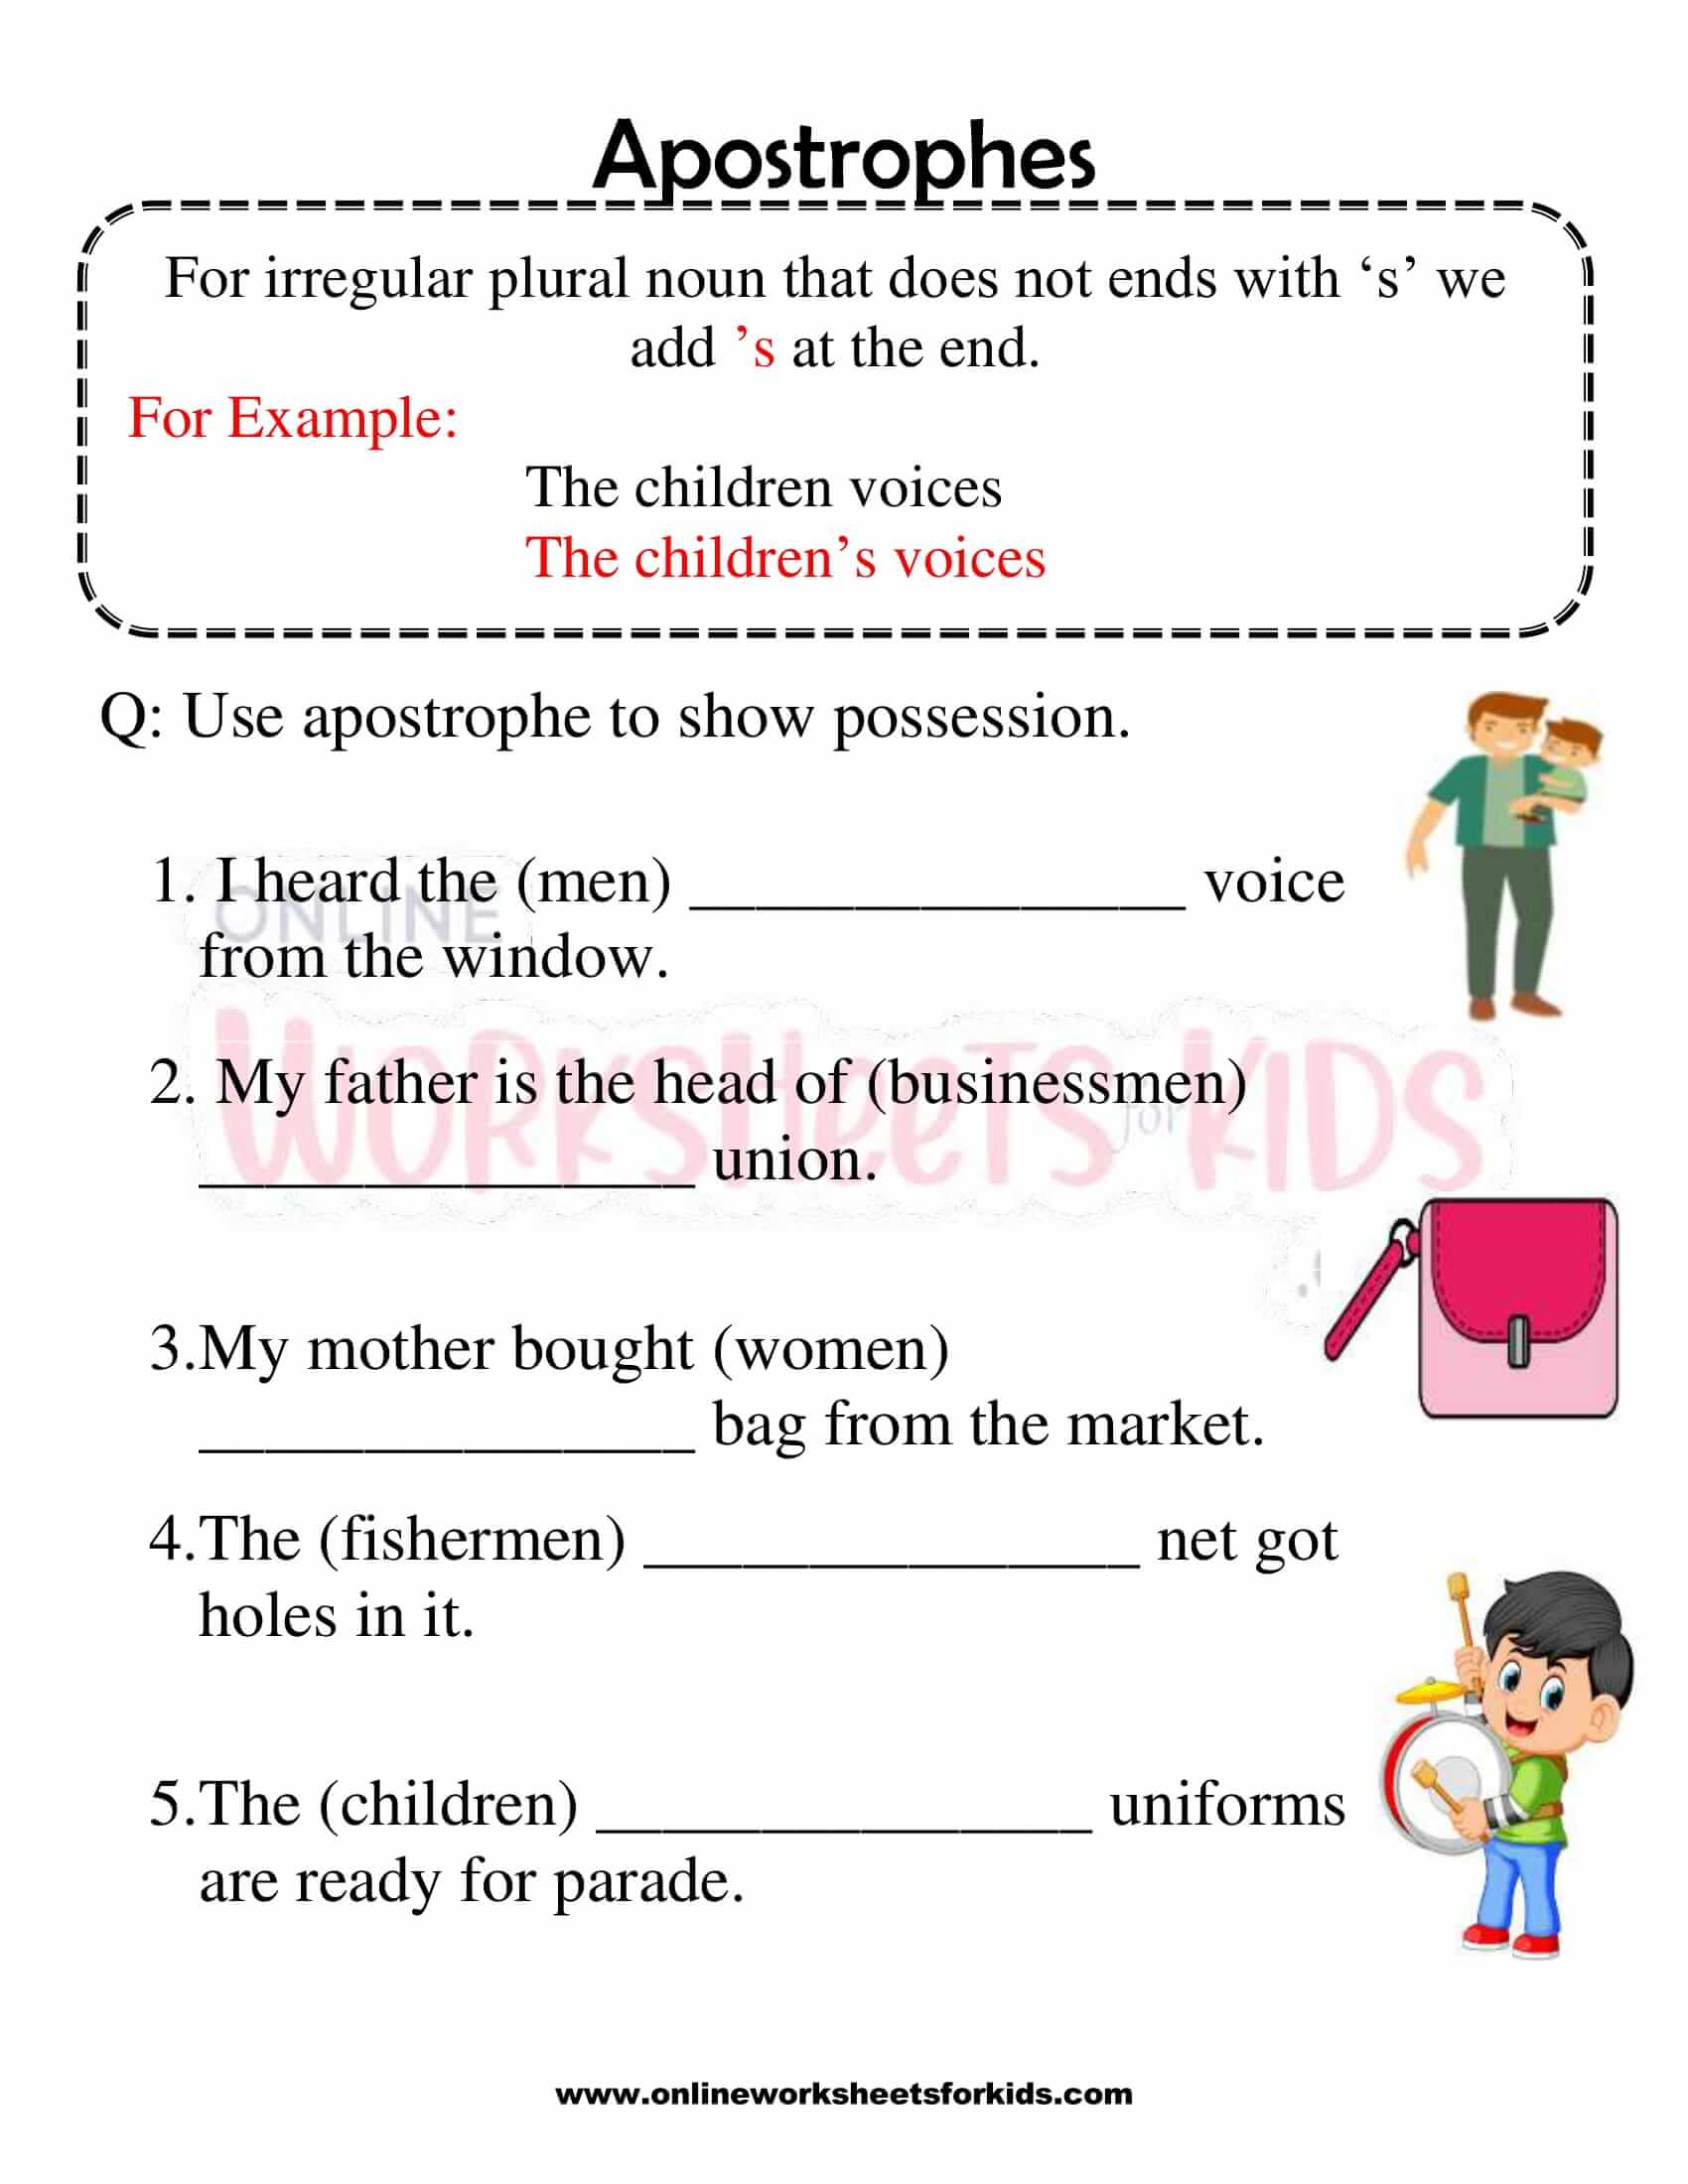 number-words-worksheet-1-100-for-grade-1-10